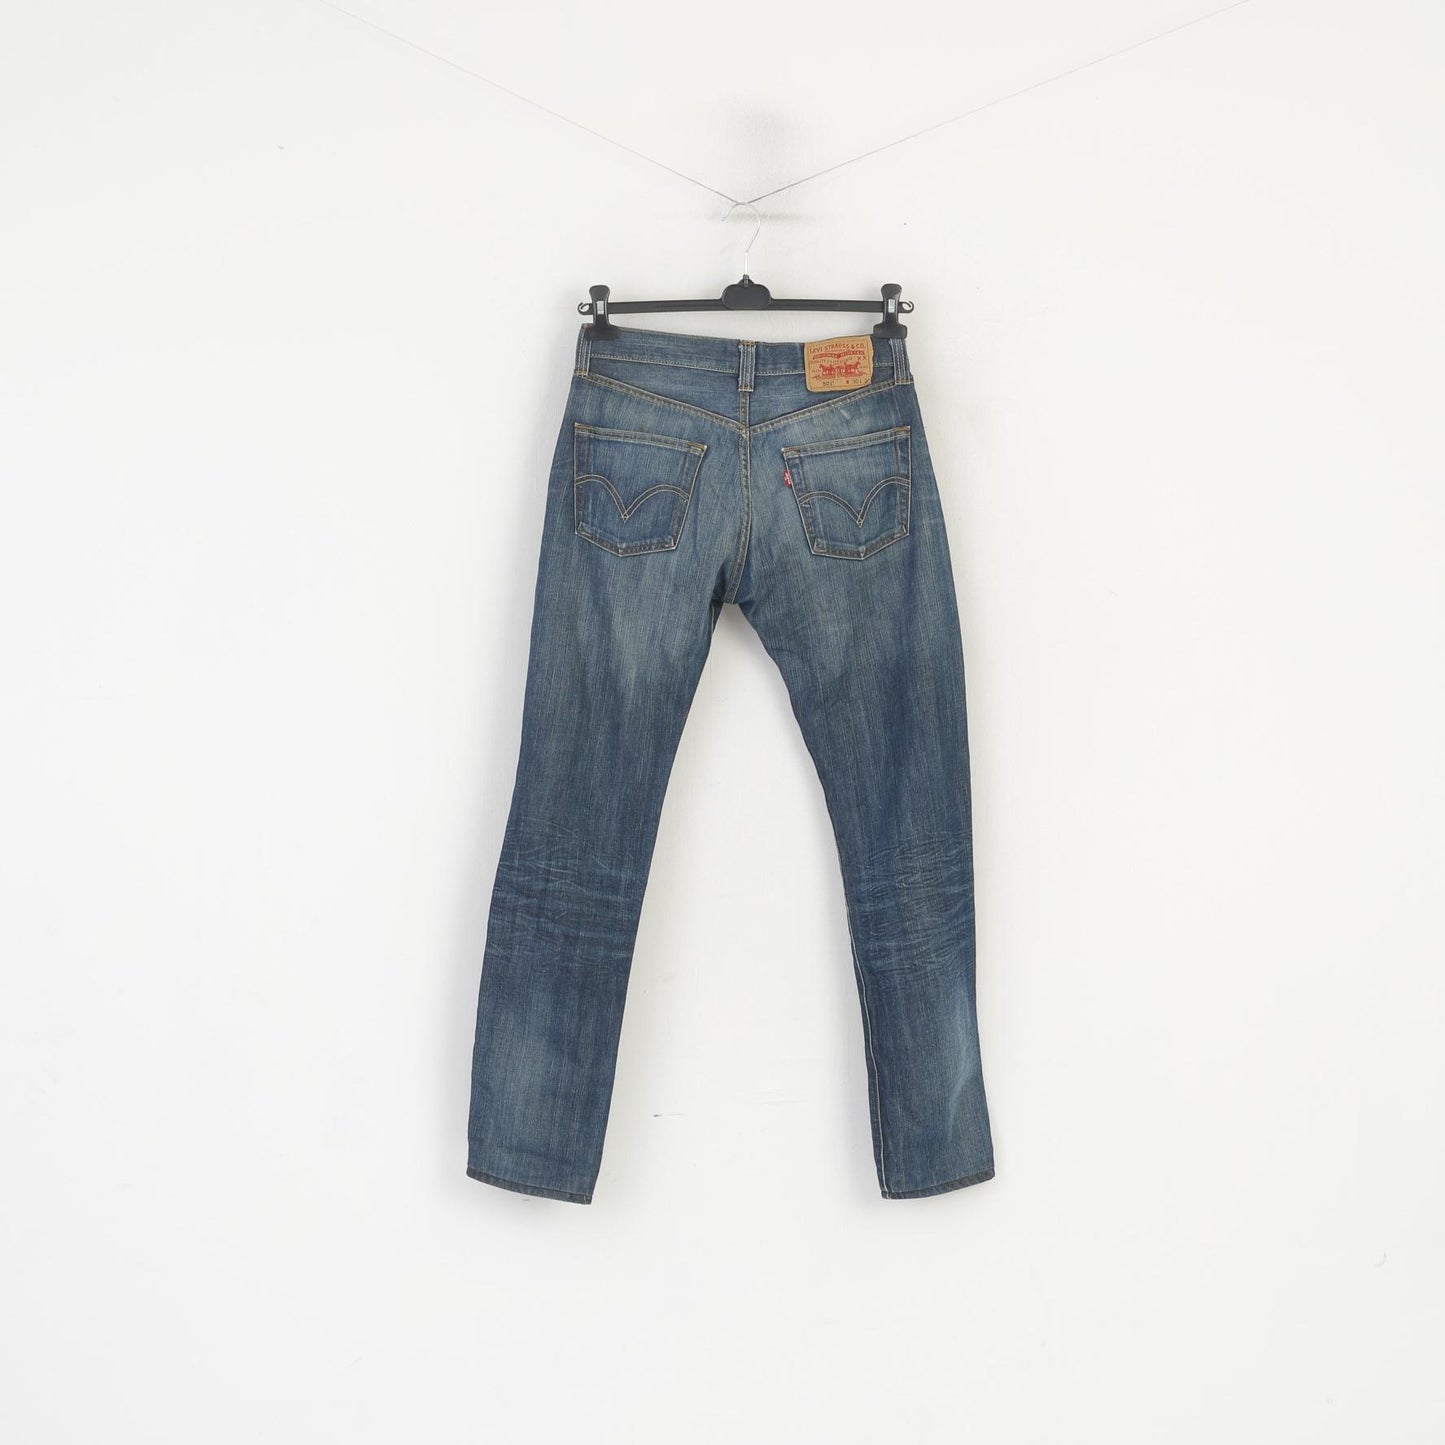 Levi's 501 Women 30 Jeans Trousers Blue Denim Straight Leg Button Fly Pants